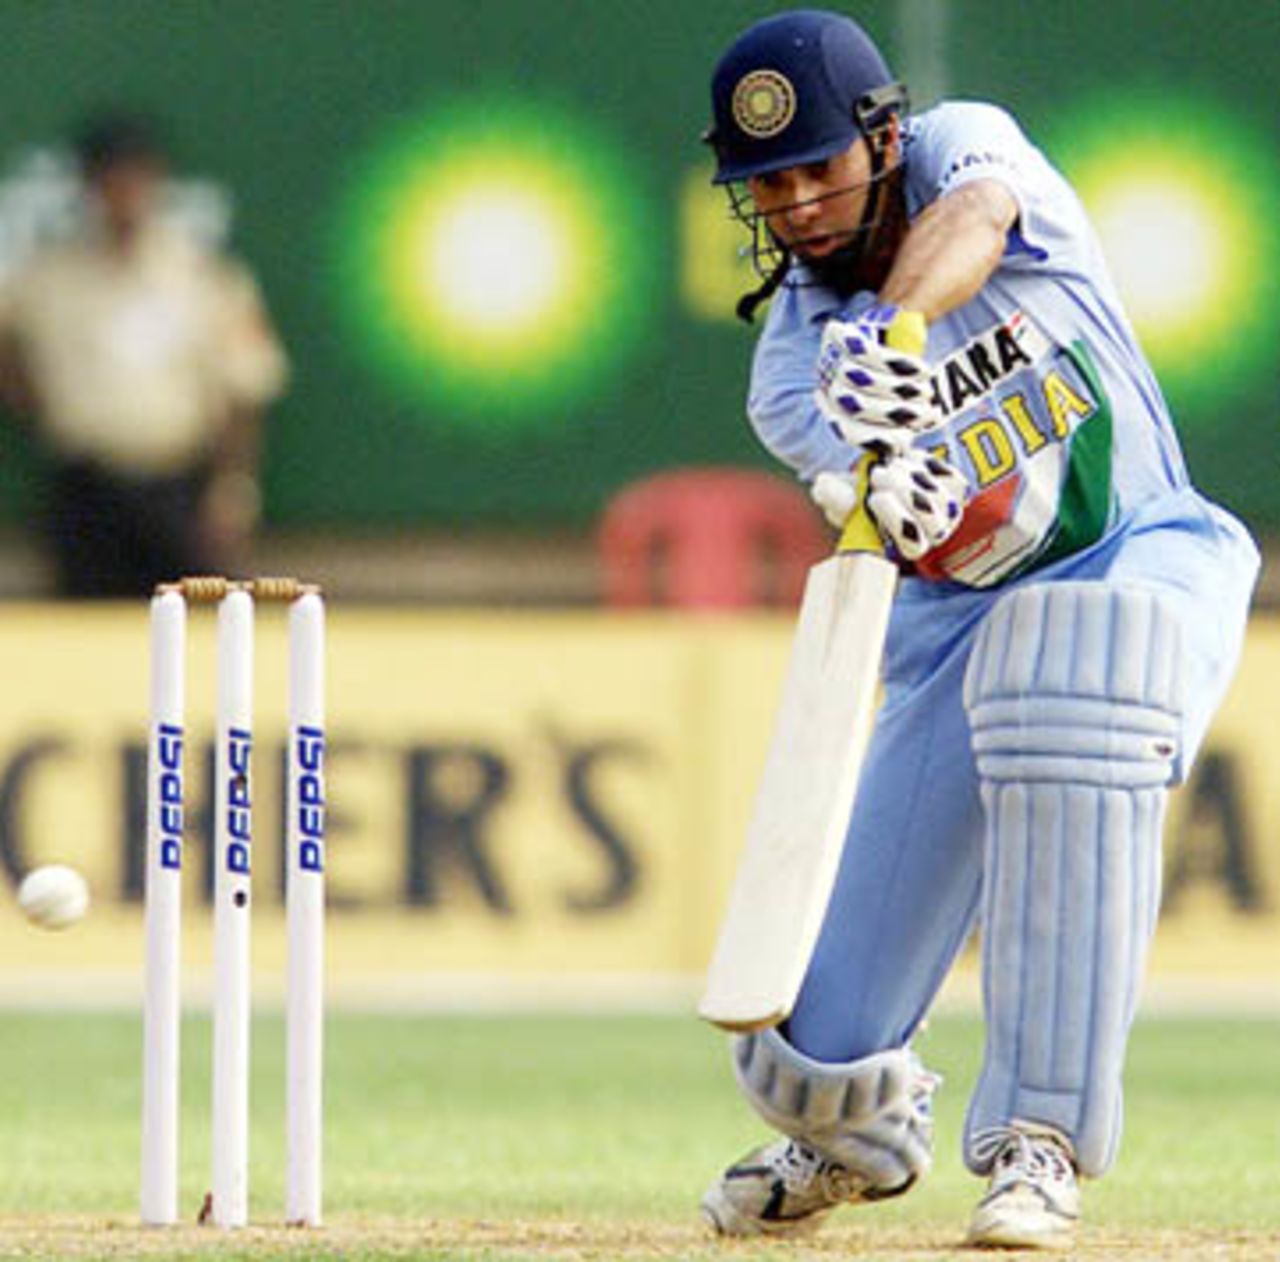 India v Zimbabwe,  3rd One Day International, Nehru Stadium, Kochi, 13 March 2002